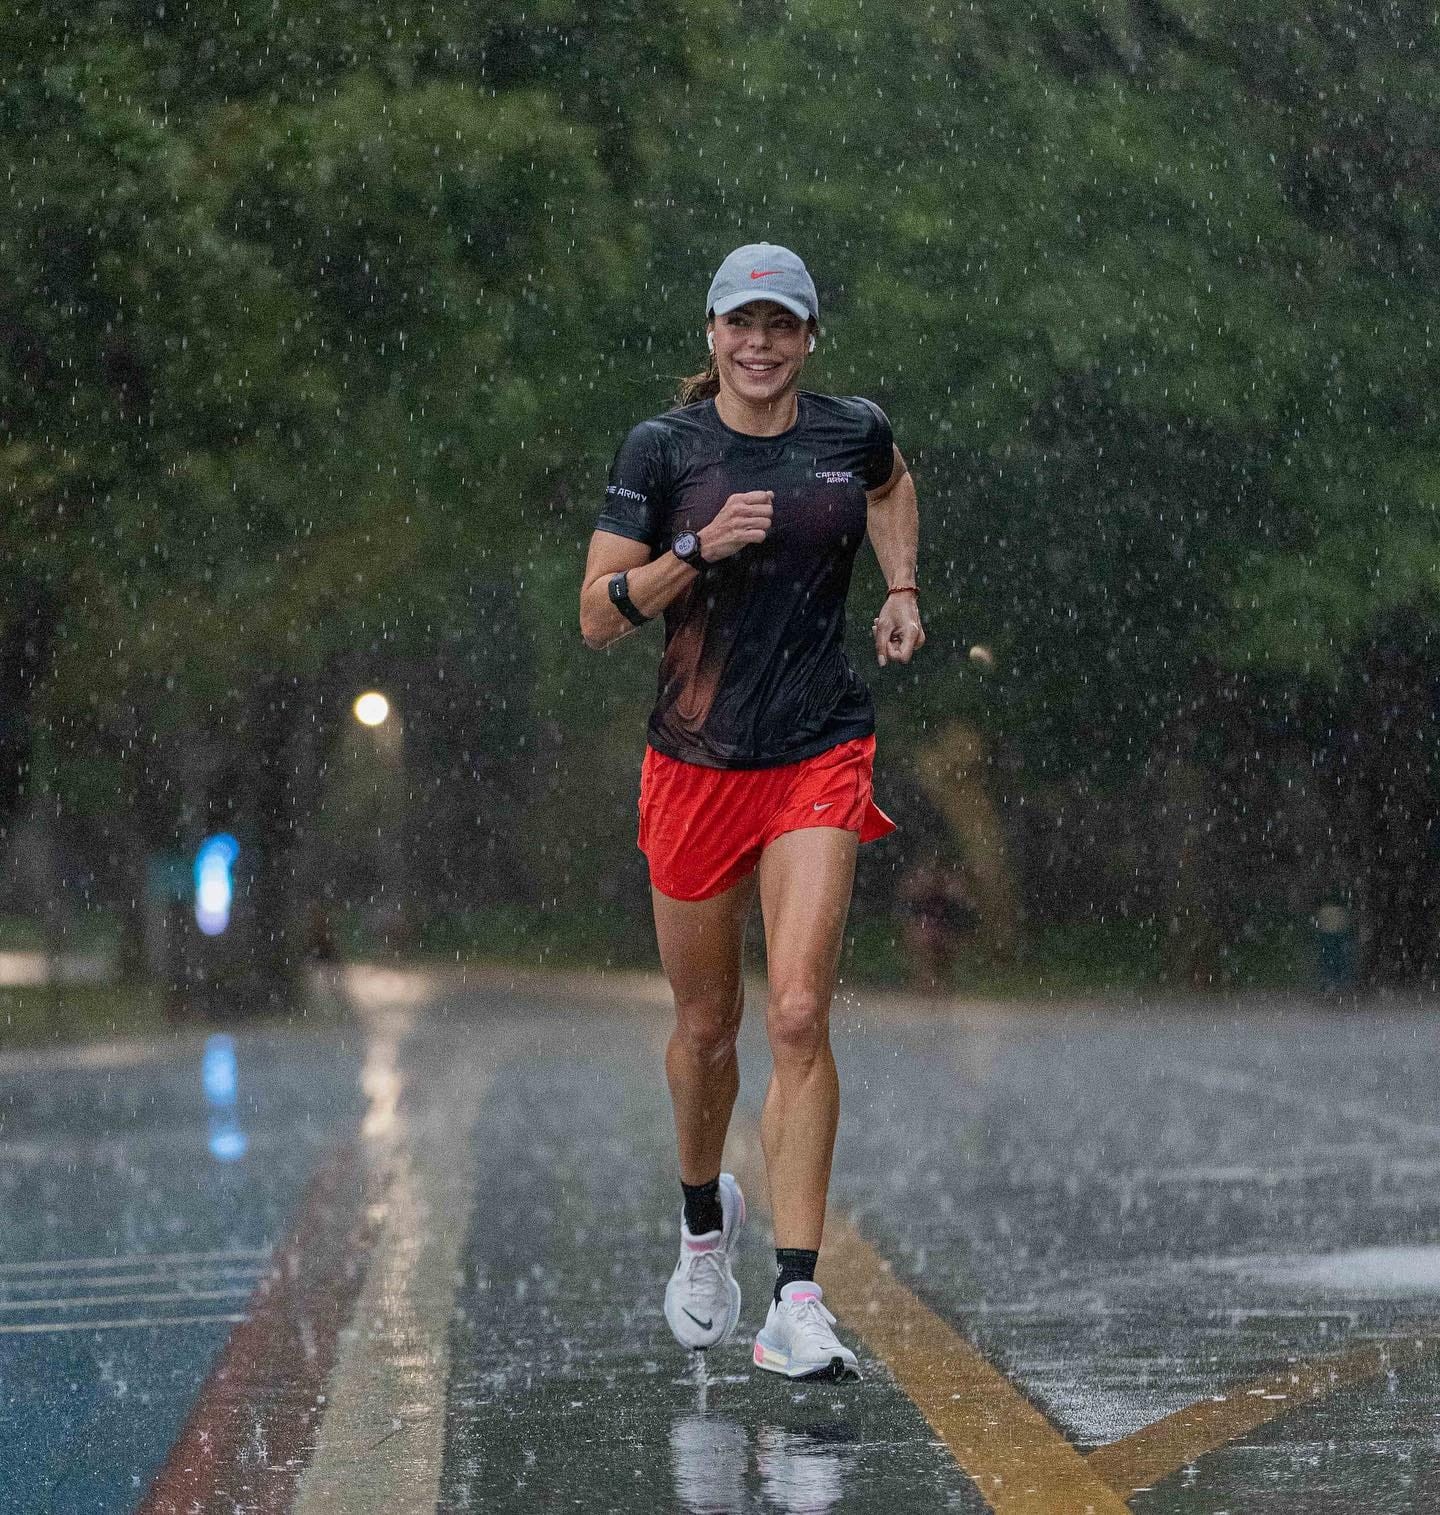 Daniella Cicarelli corre na chuva — Foto: Reprodução/Instagram